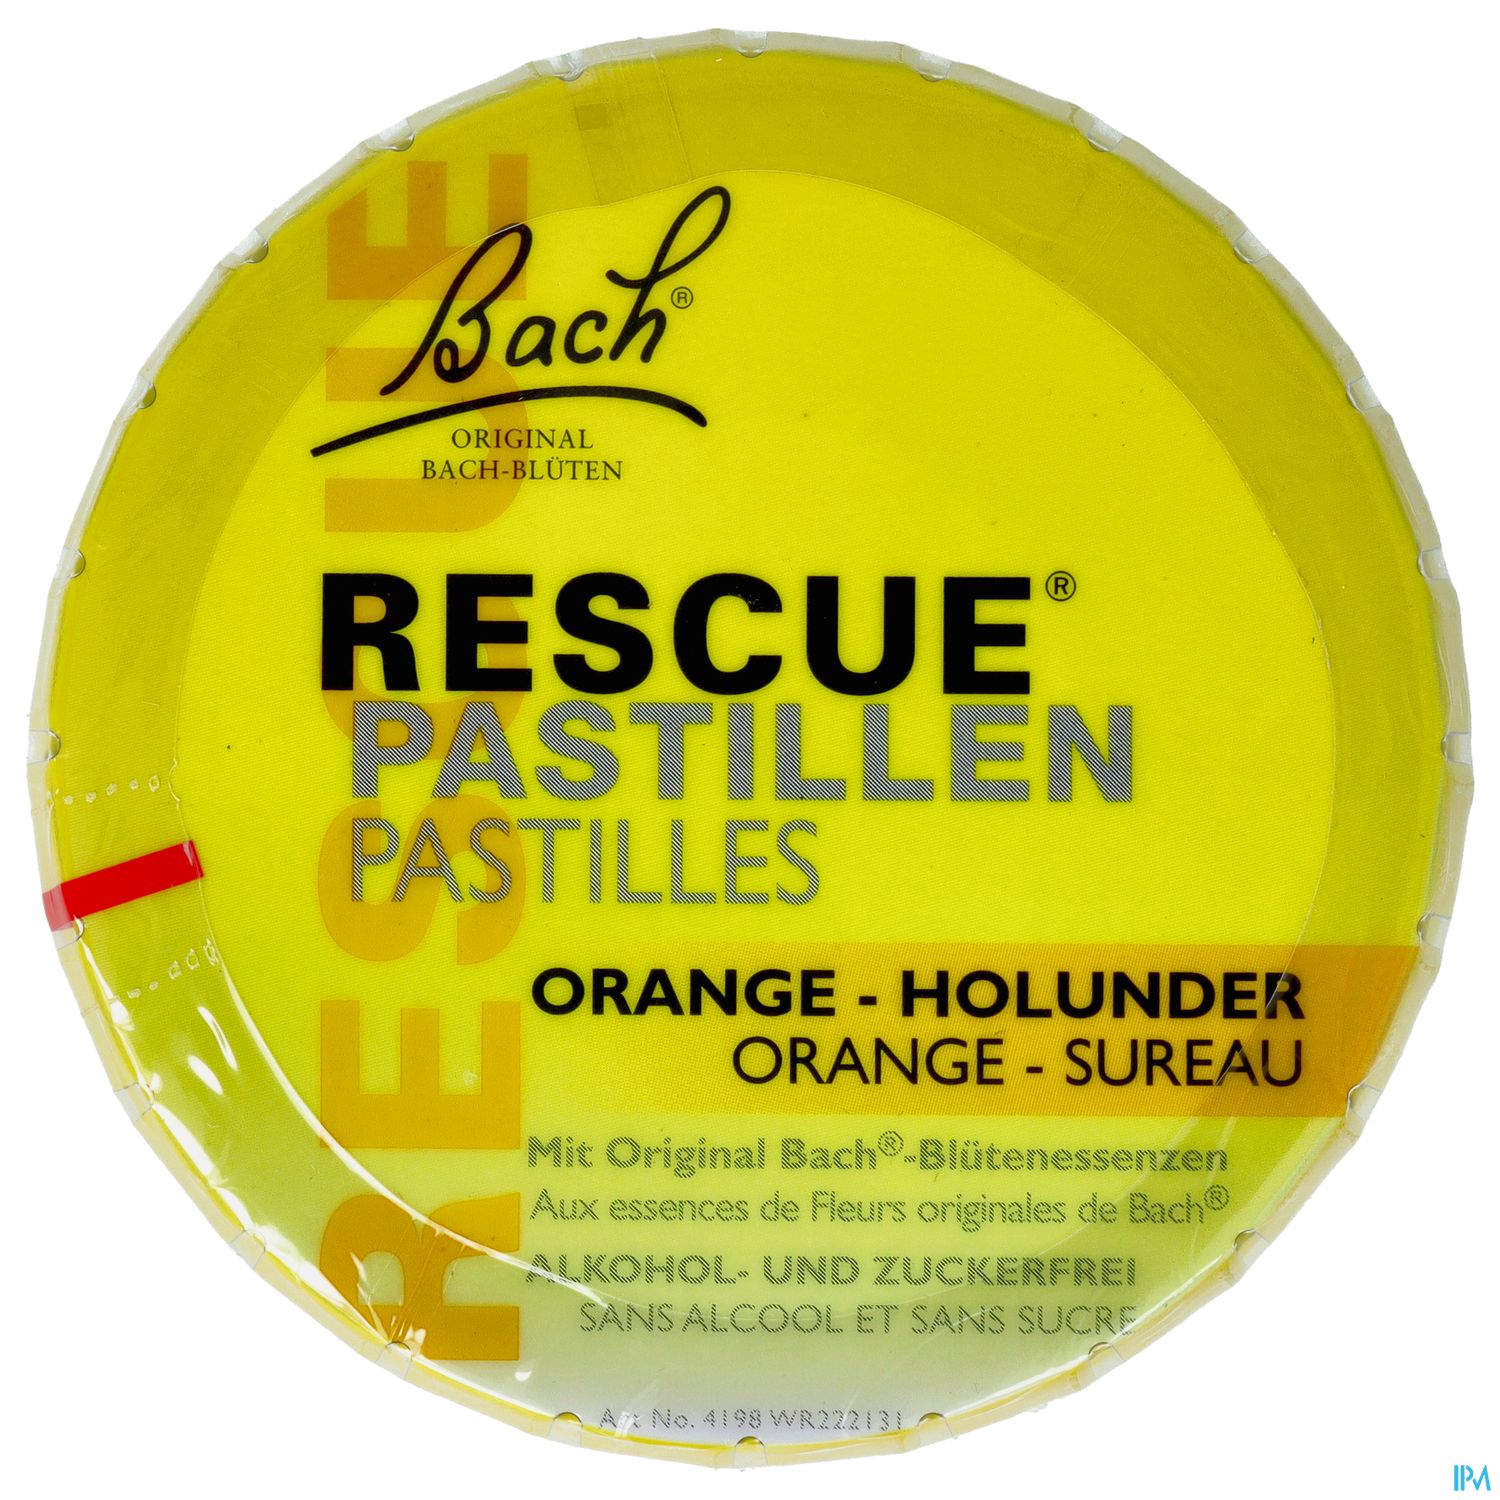 Rescura Pastillen Orange-holunder 50g